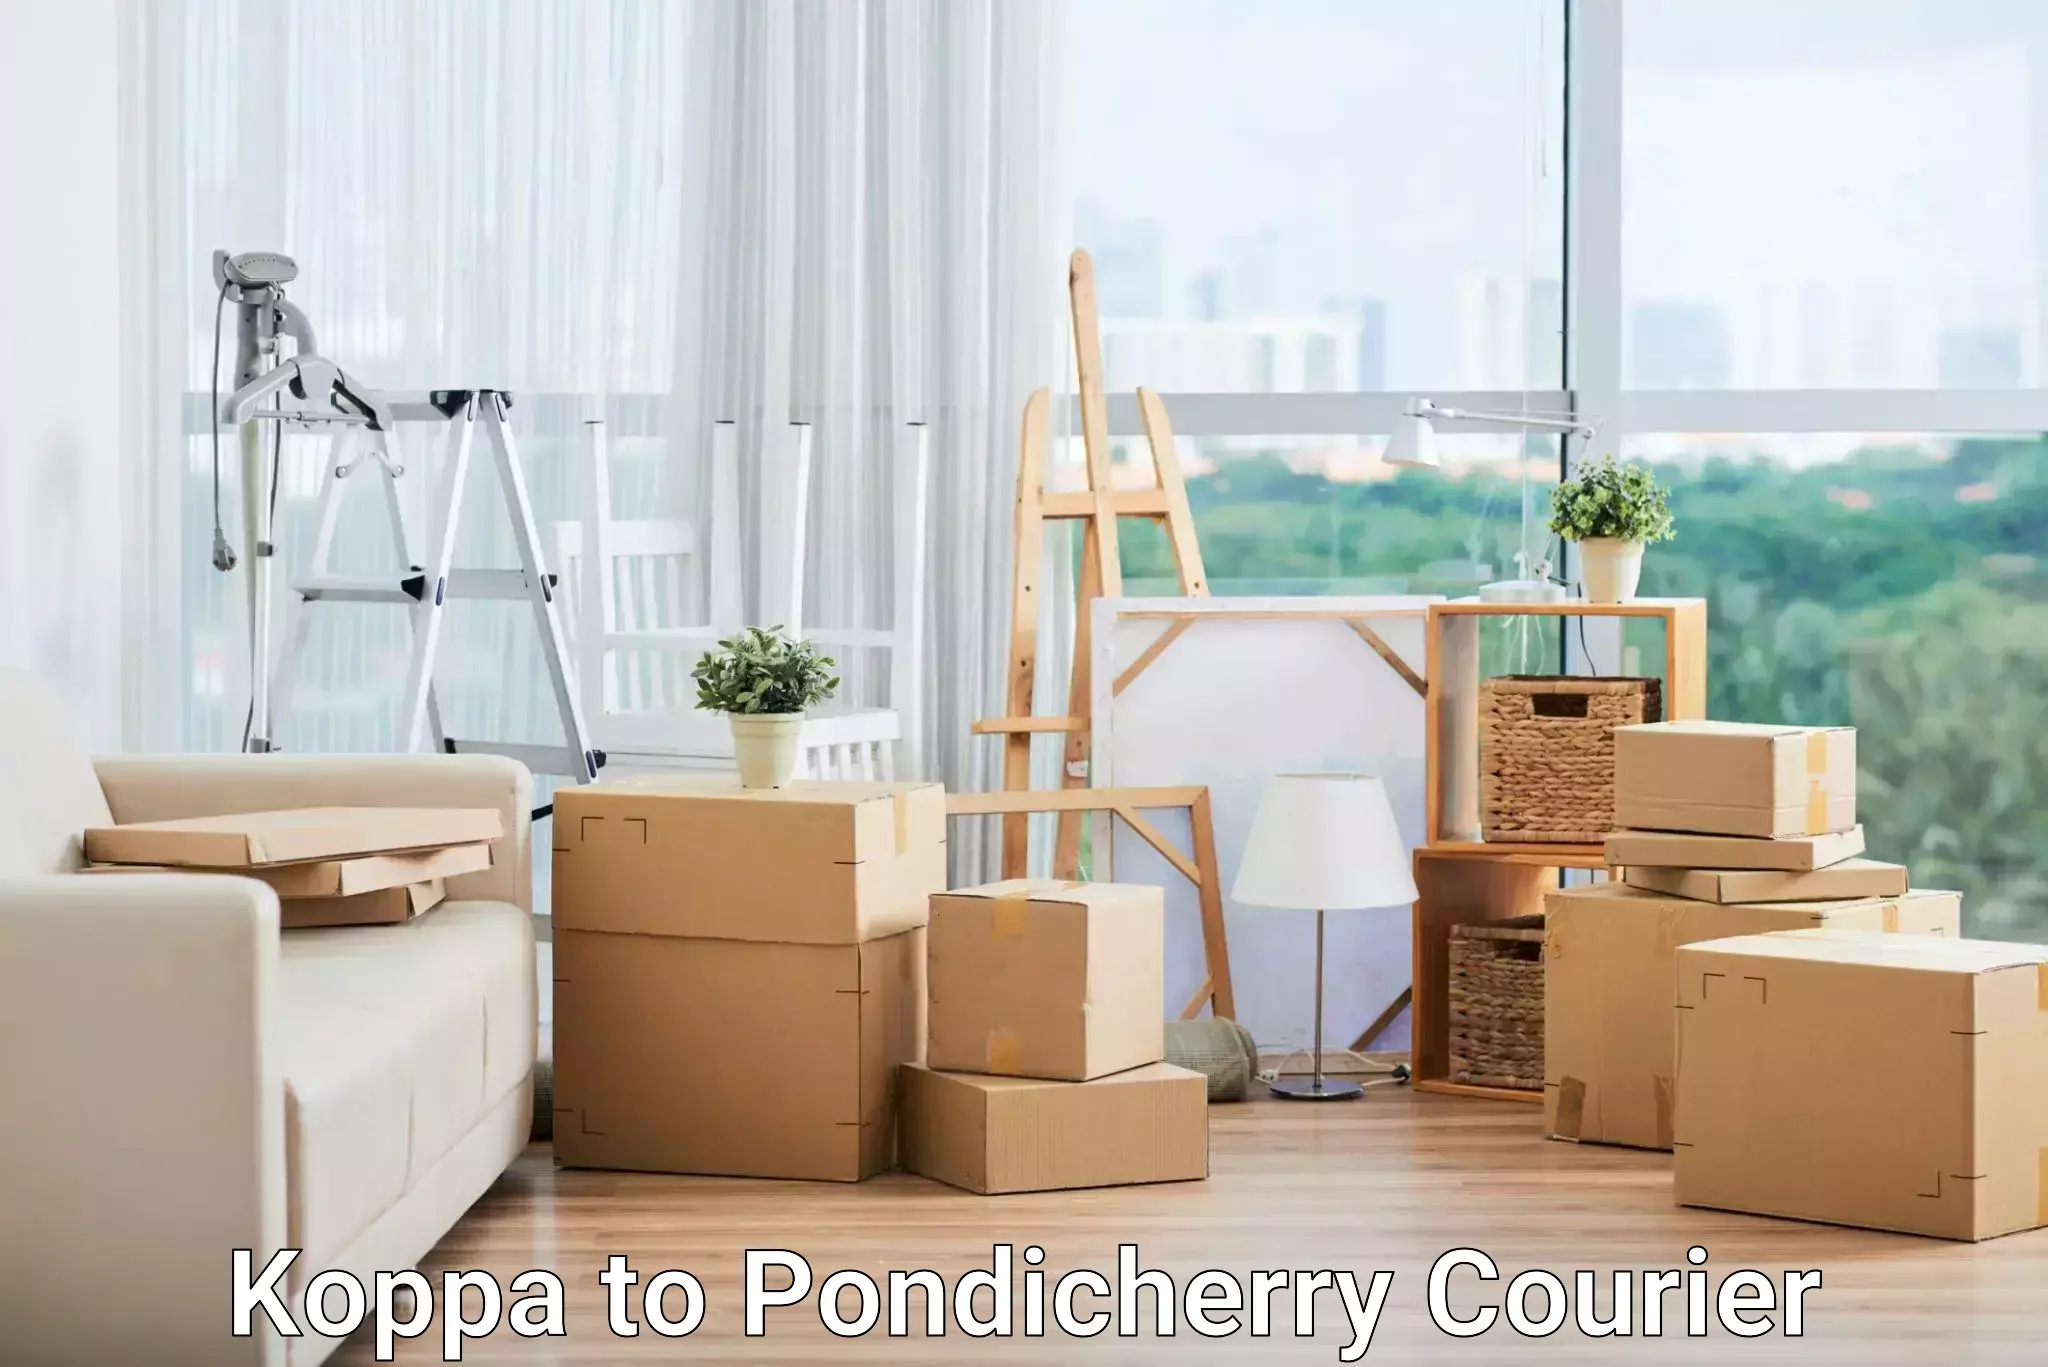 Return courier service Koppa to Pondicherry